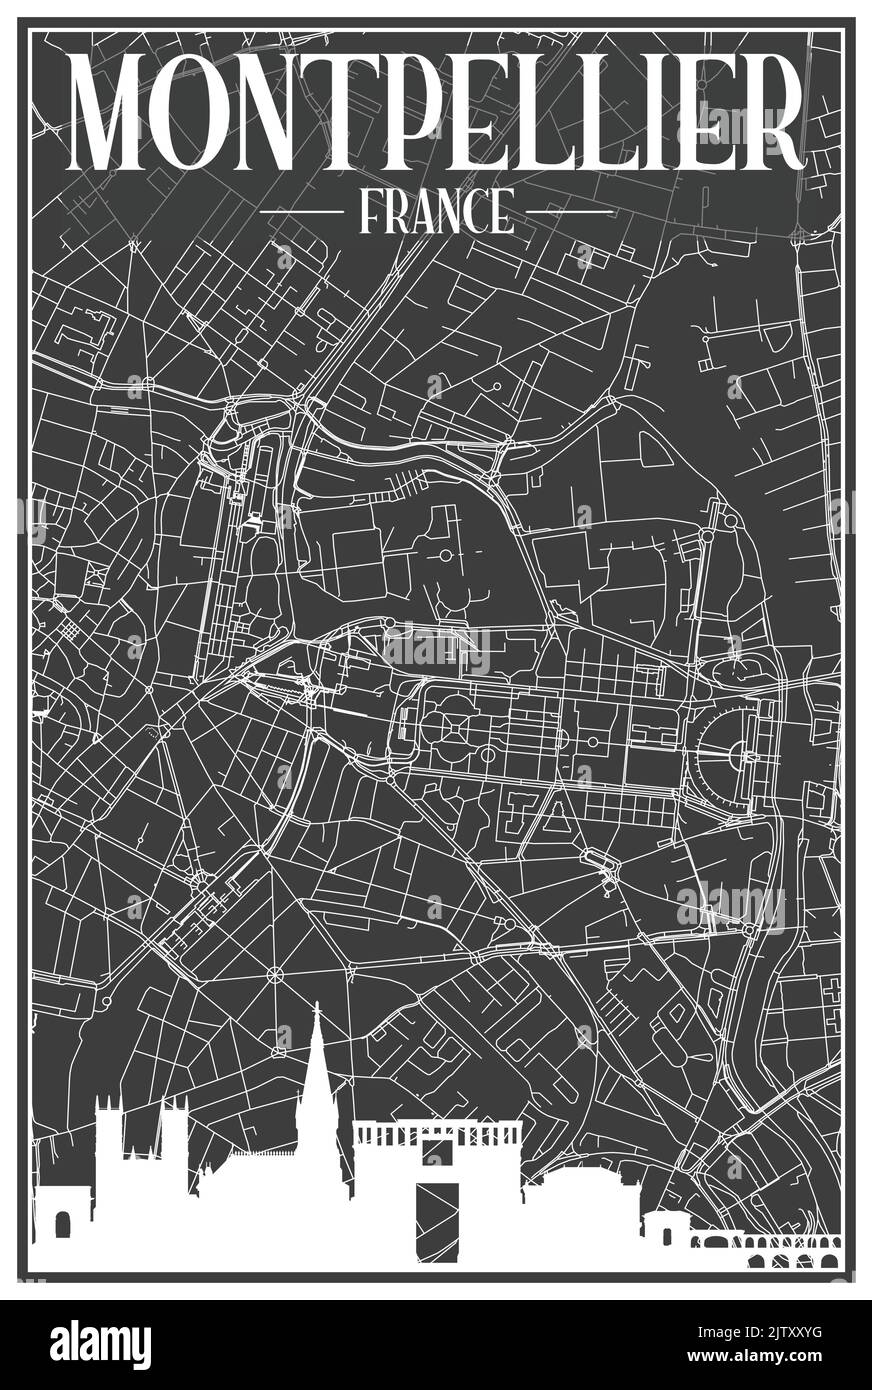 Impression sombre affiche de la ville avec vue panoramique et rues dessinées à la main sur fond gris foncé du centre DE MONTPELLIER, FRANCE Illustration de Vecteur